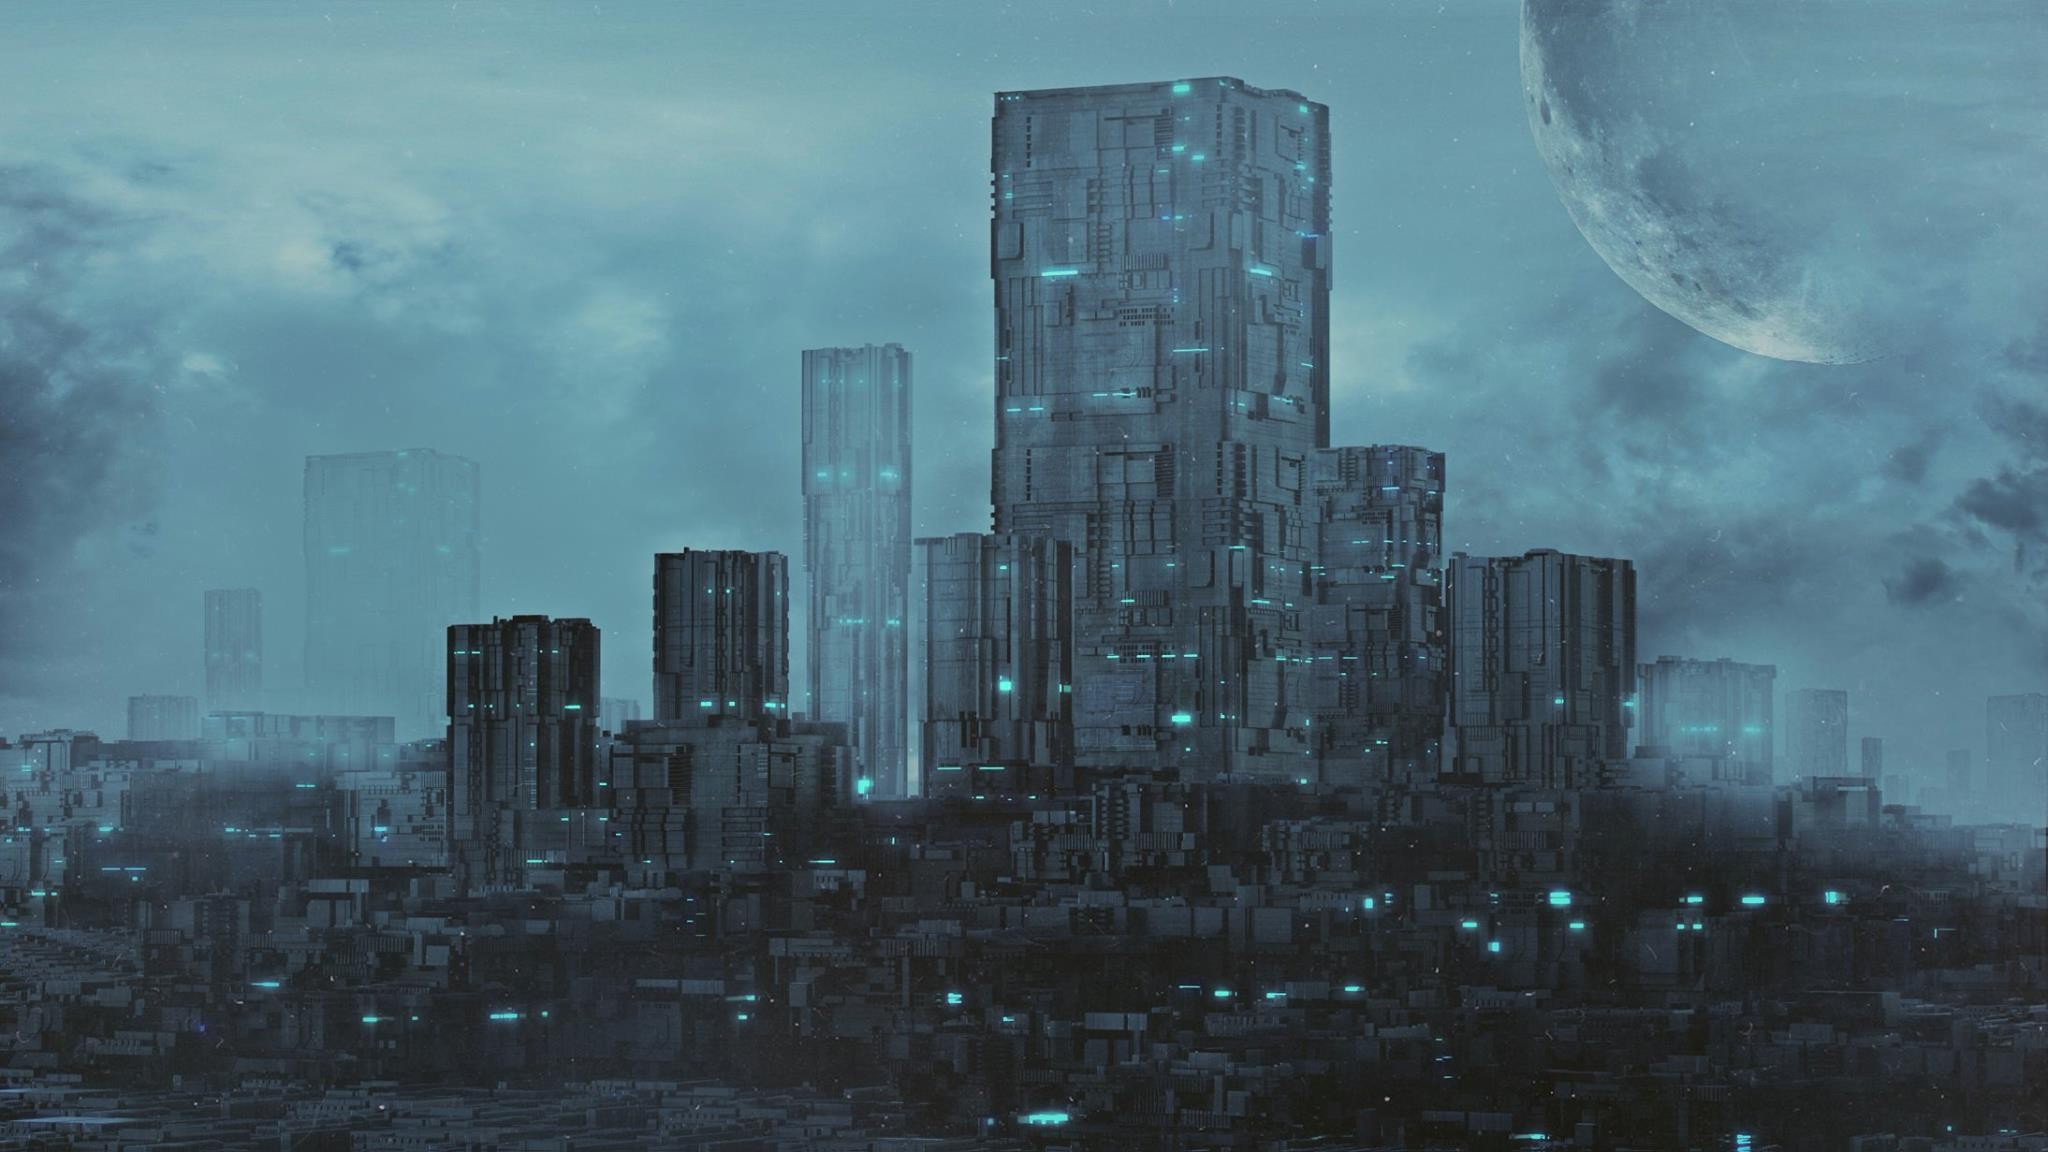 General 2048x1152 skyscraper monochrome cyan cityscape digital art futuristic futuristic city